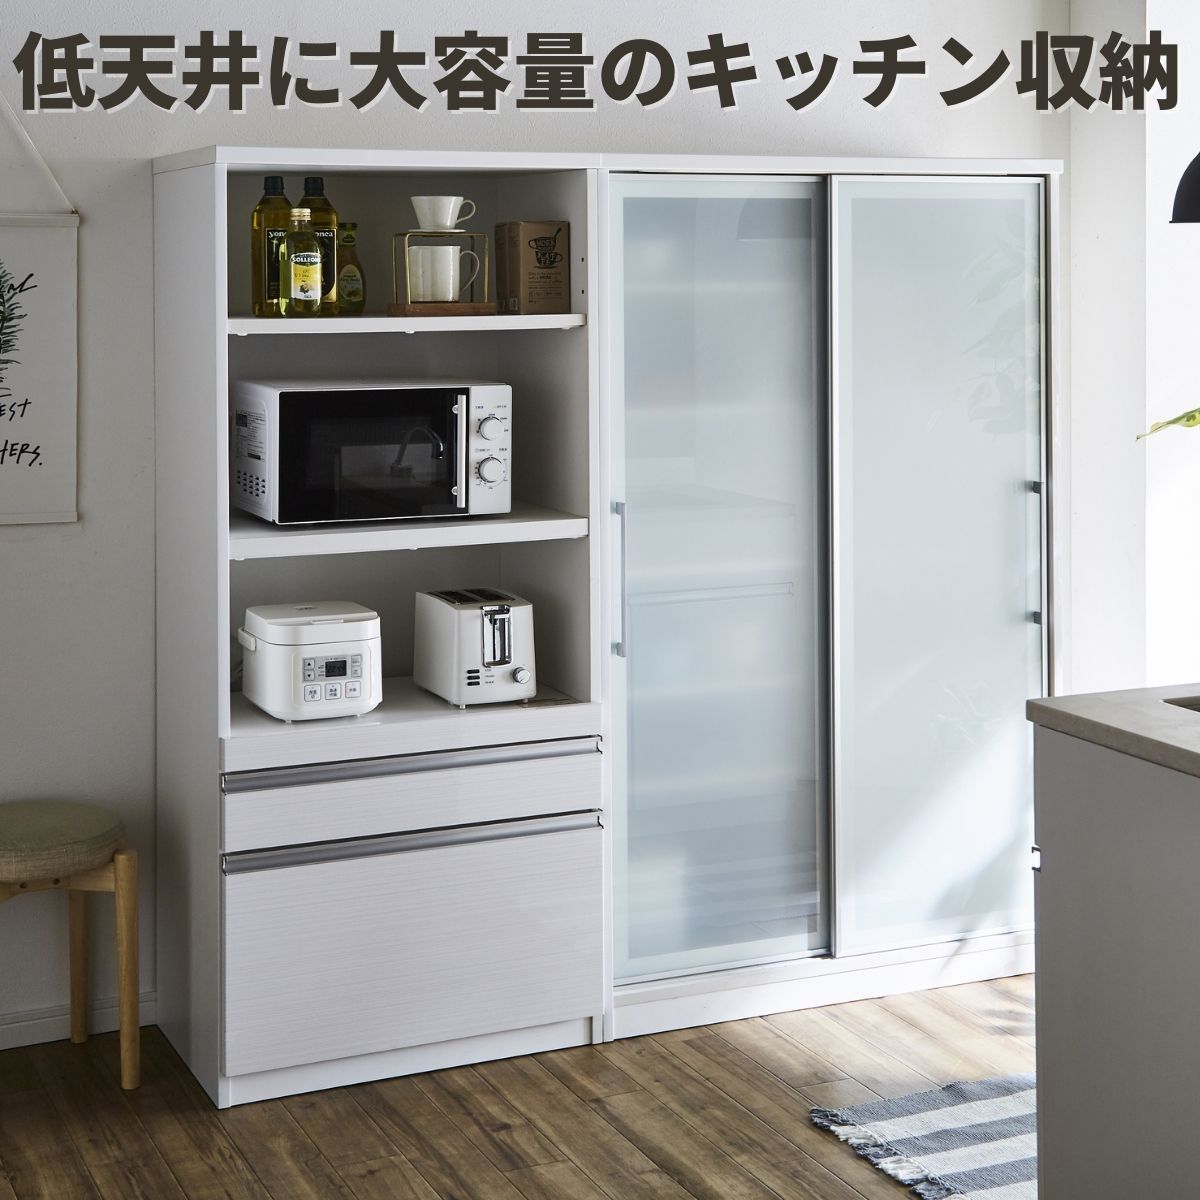 食器棚、キッチンボード、キッチンカウンター-大川家具ドットコム